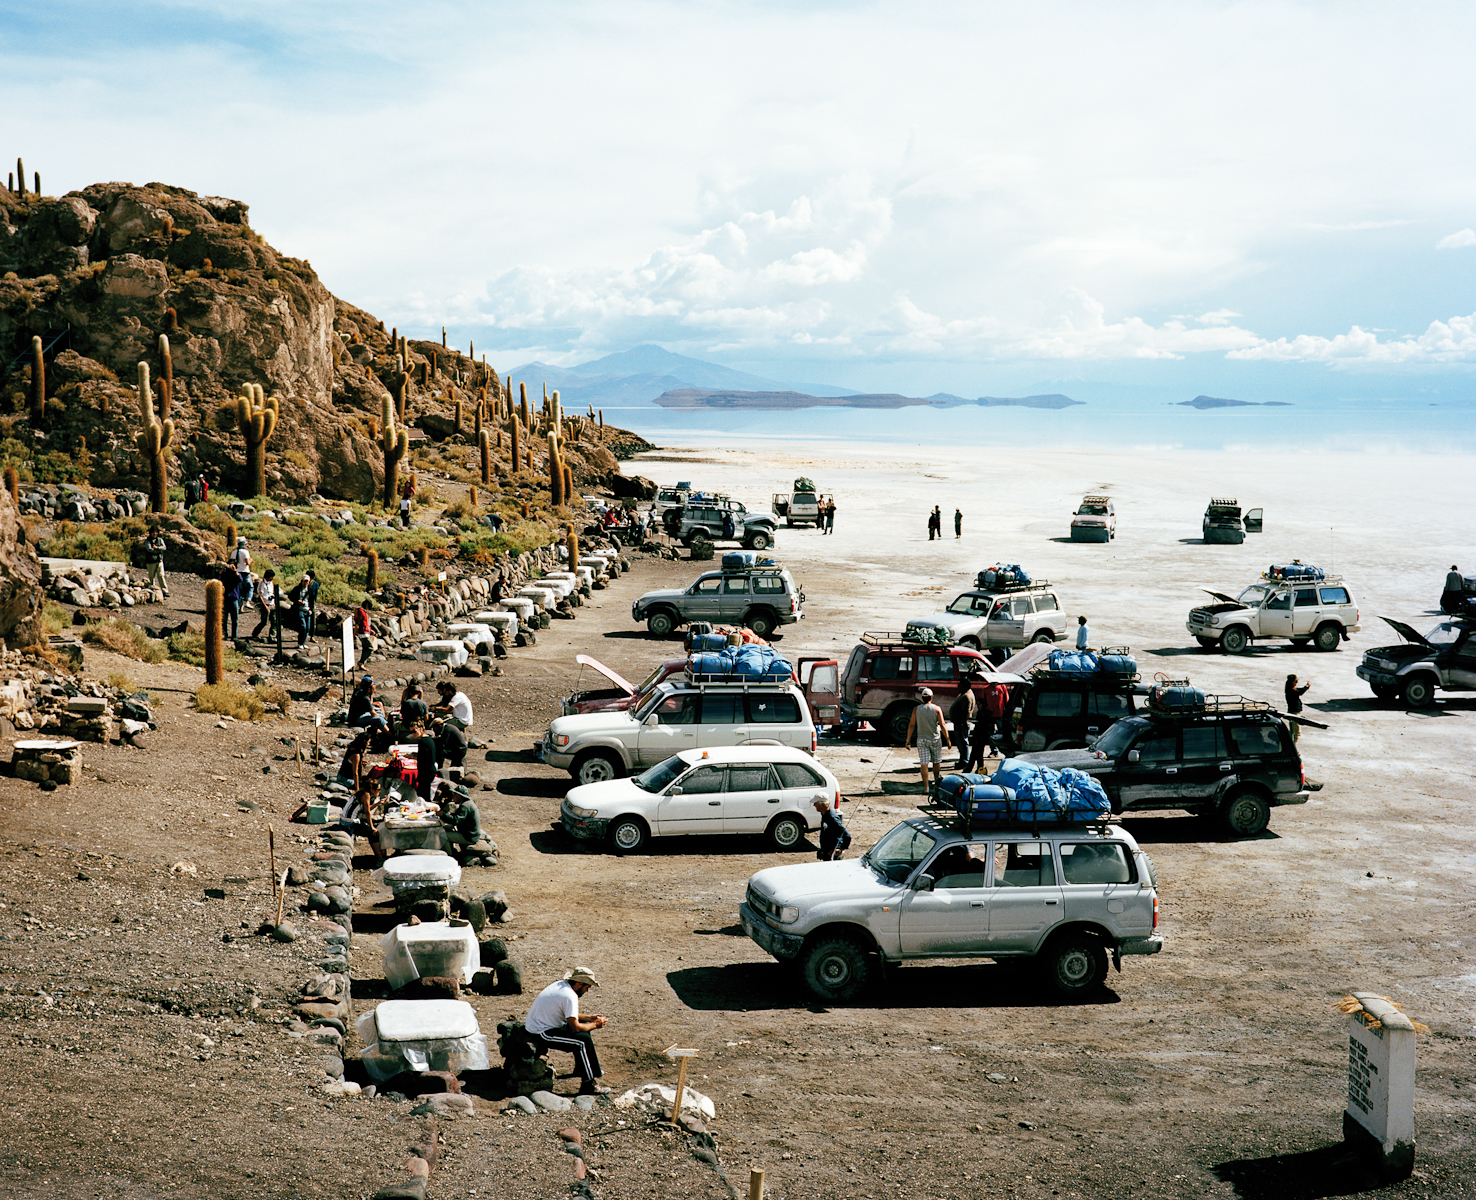   Isla del pescado  in the Salar de Uyuni, Bolivia  